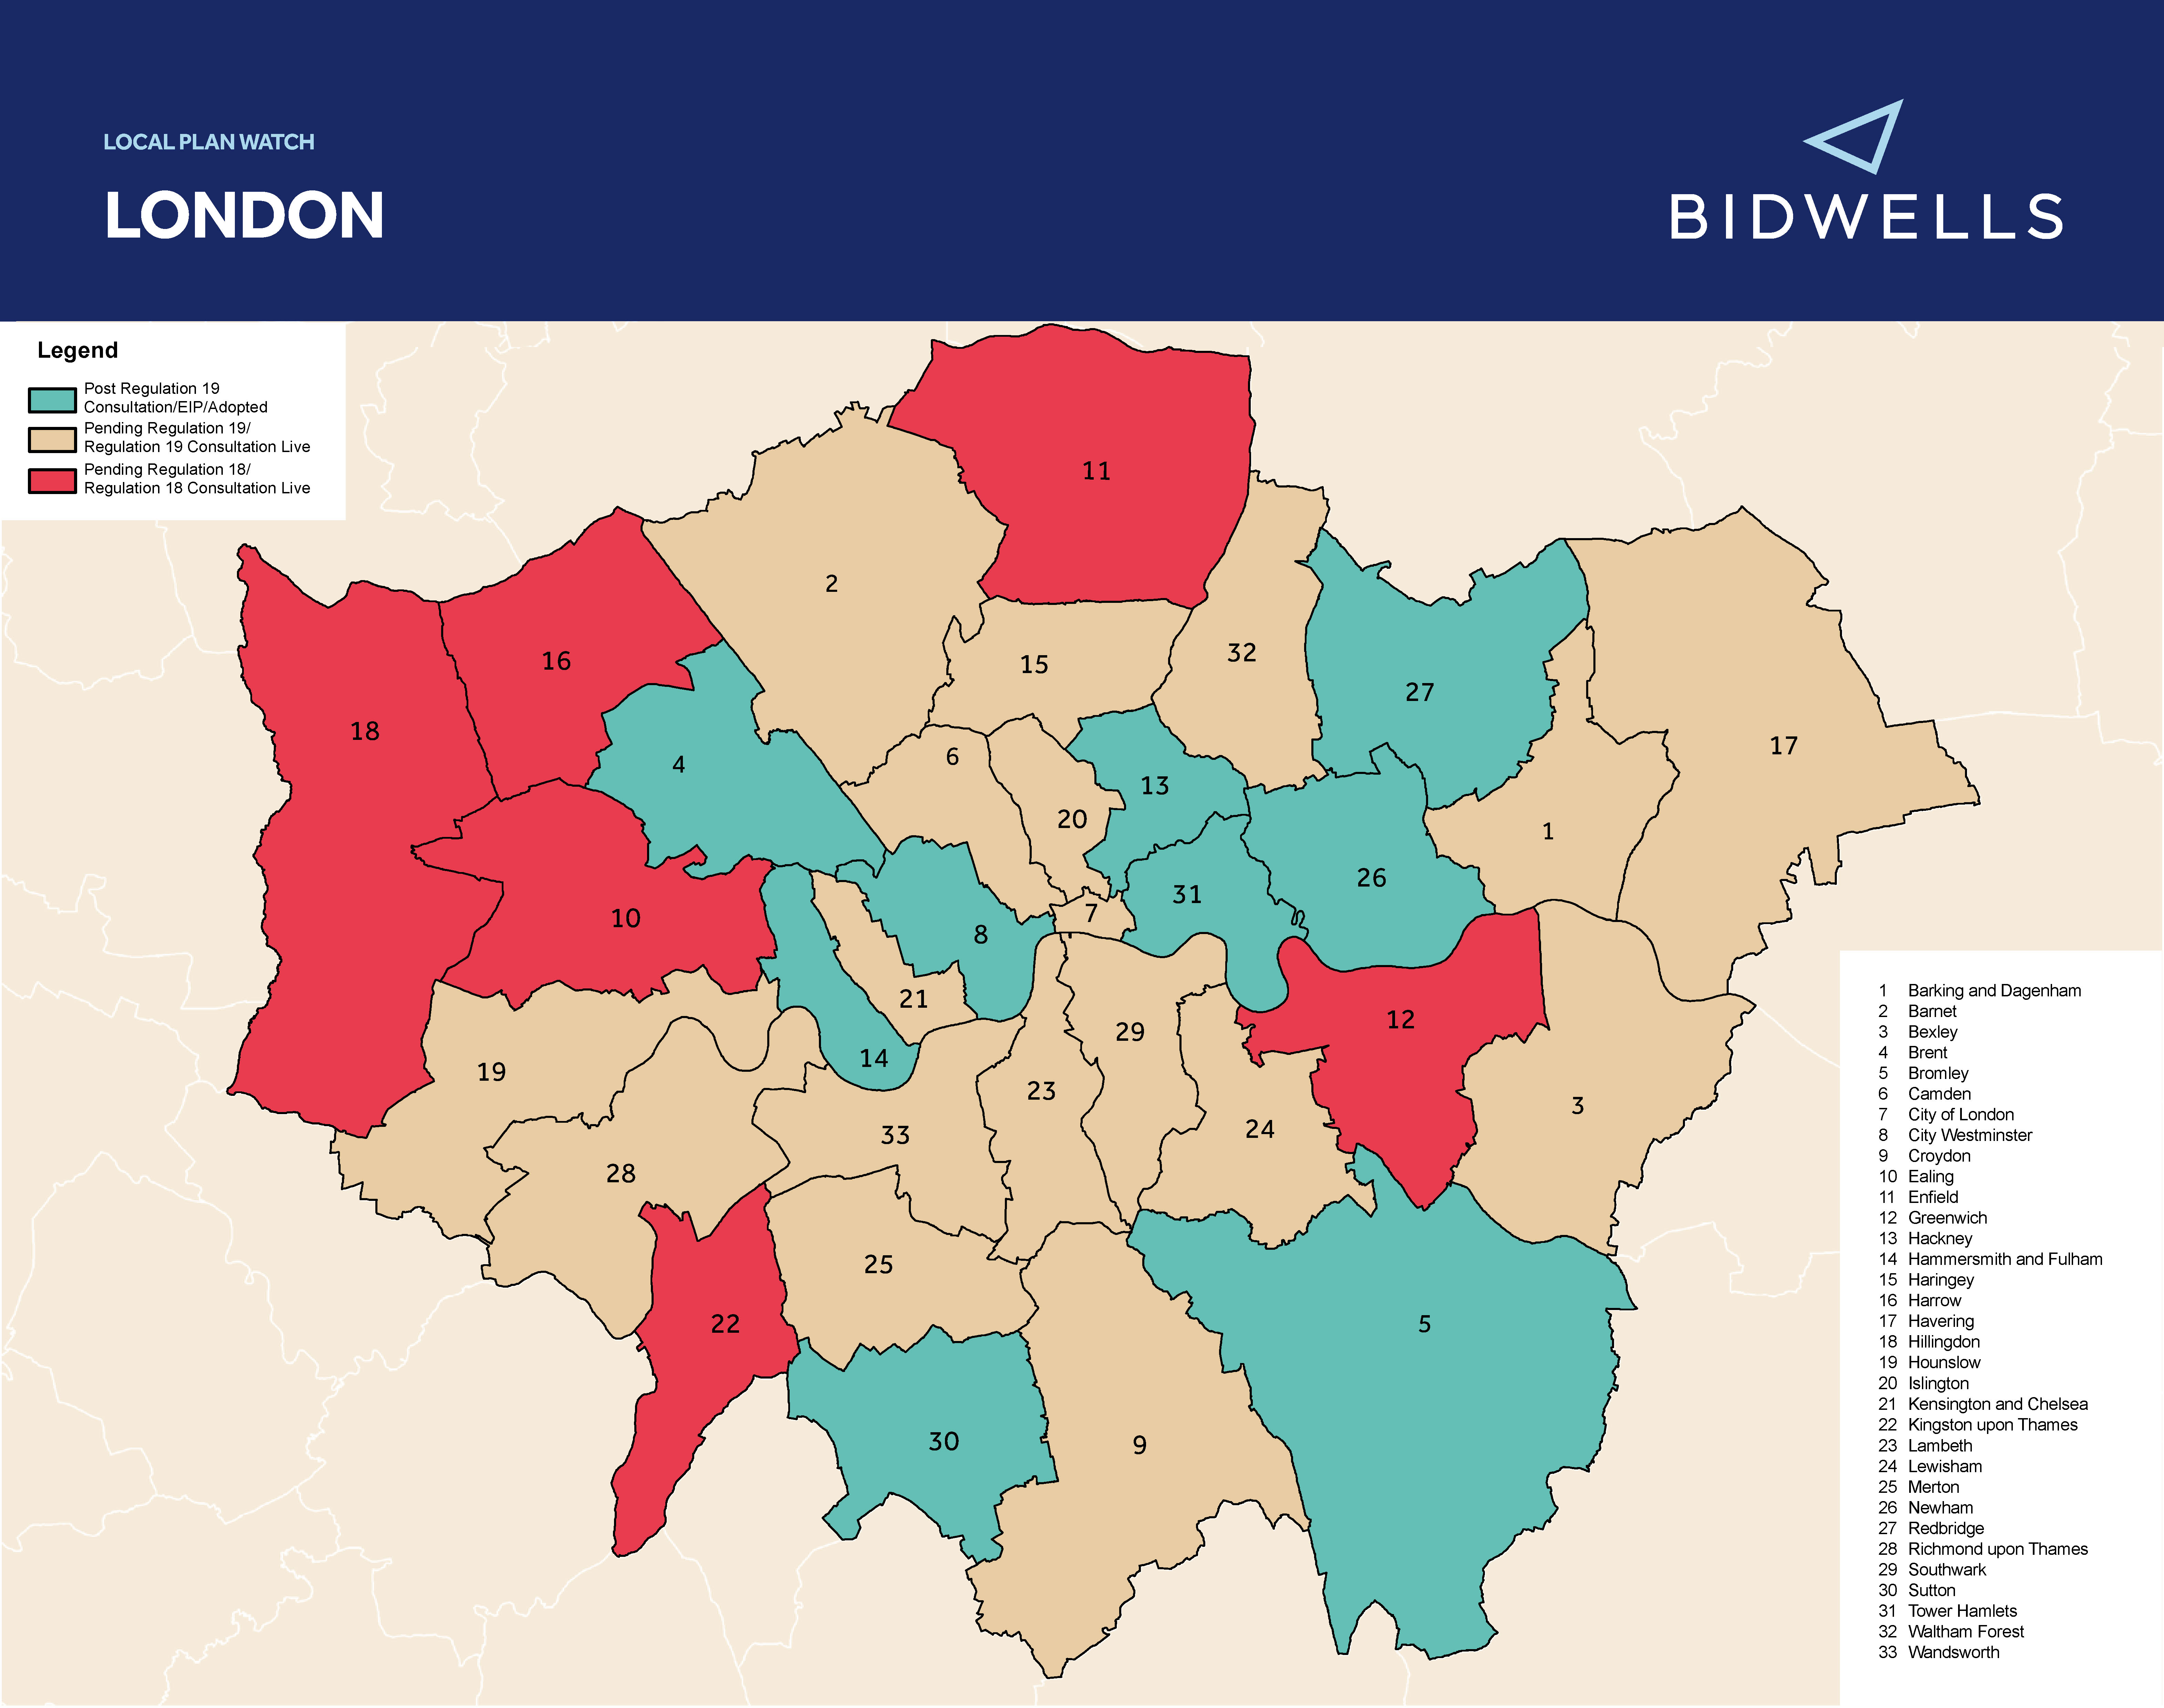 London LPW map Spring 2021